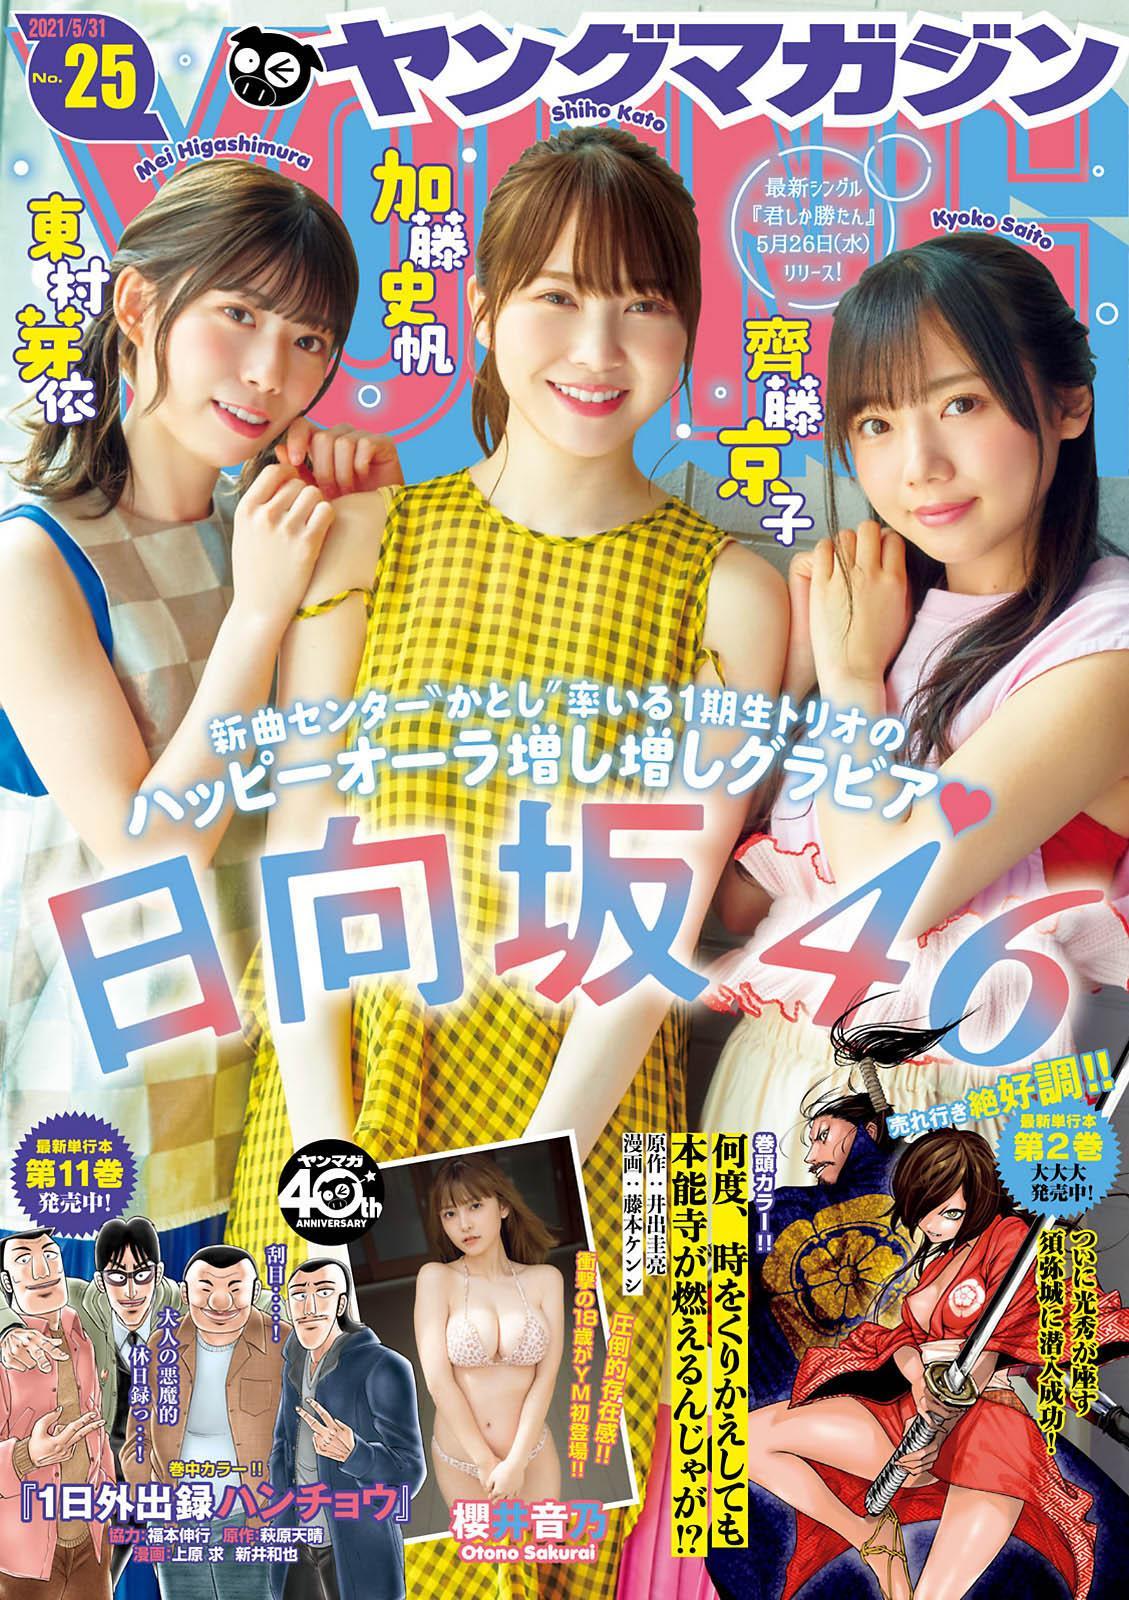 加藤史帆, 齊藤京子, 東村芽依, Young Magazine 2021 No.25 (ヤングマガジン 2021年25号)(1)